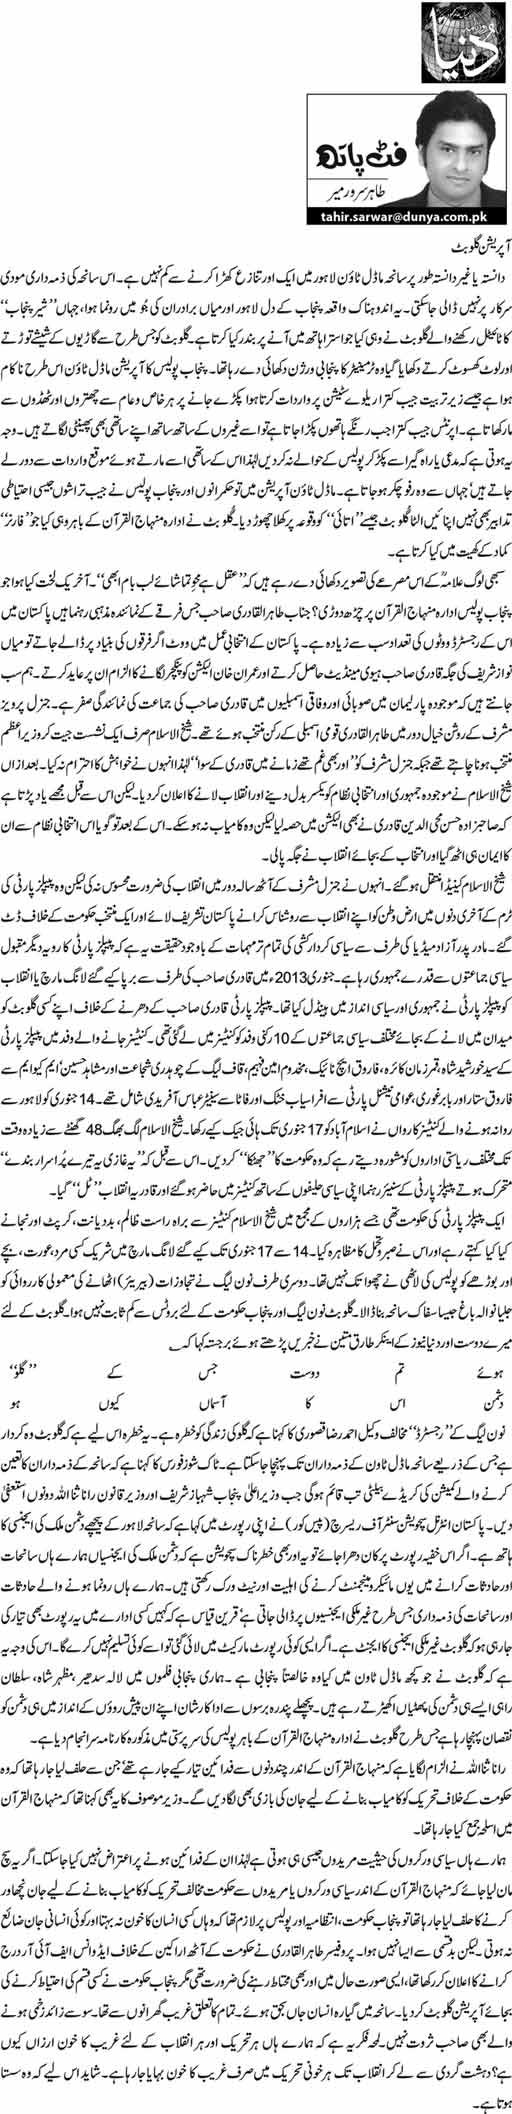 Print Media Coverage Dunya News - Tahir Sarwar Mir